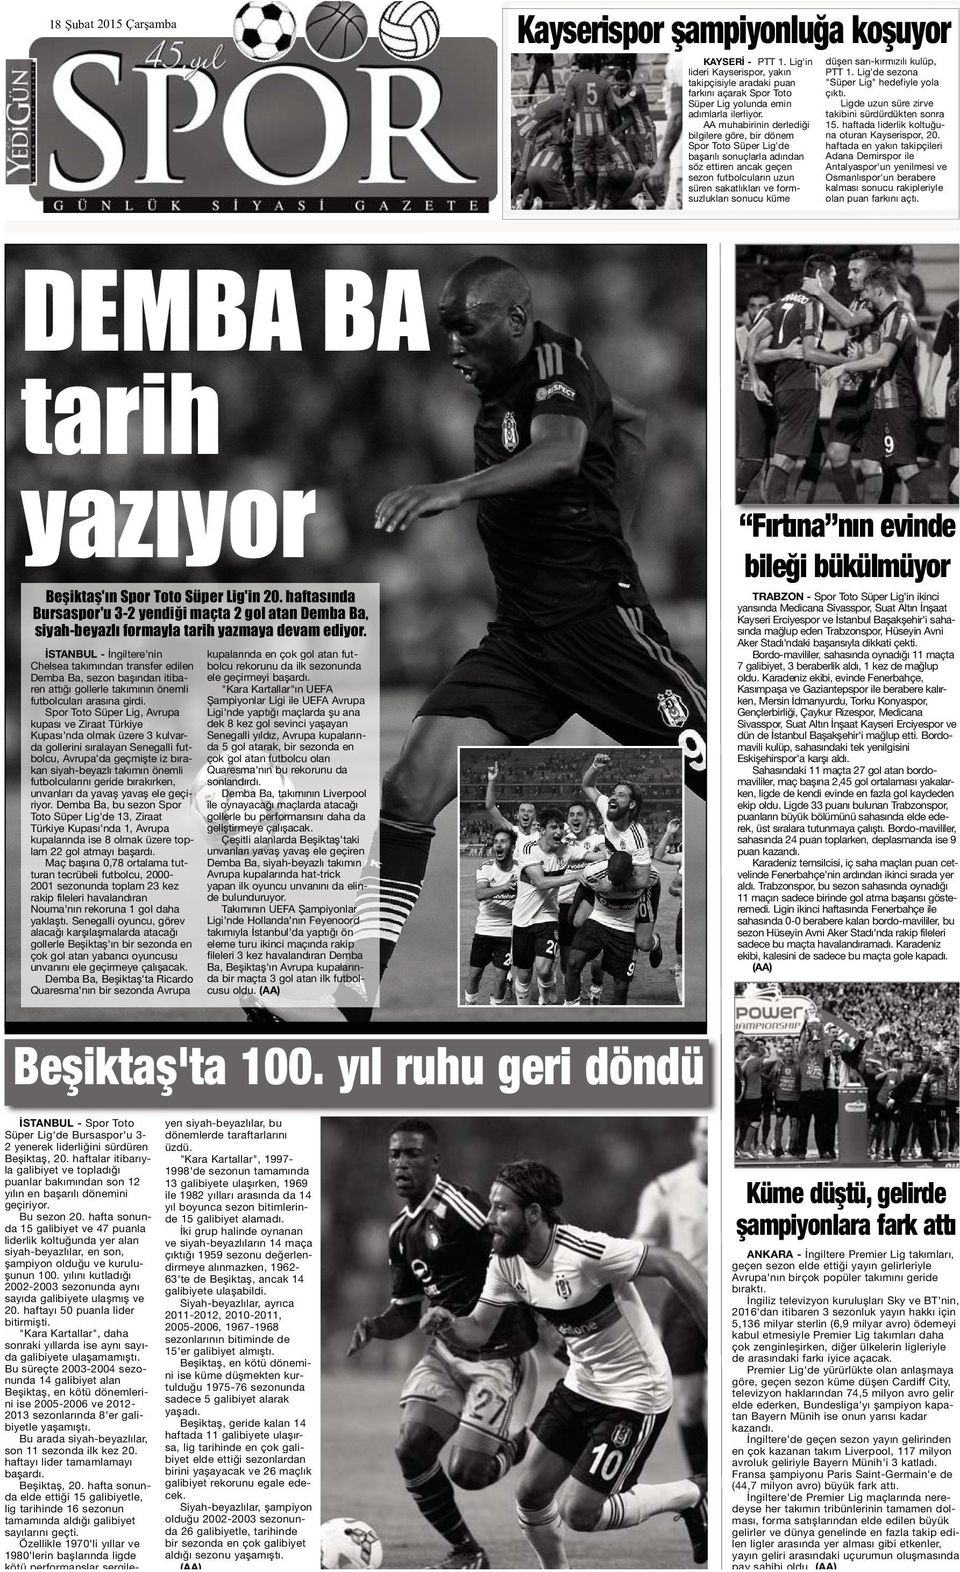 haftasında Bursaspor'u 3-2 yendiği maçta 2 gol atan Demba Ba, siyah-beyazlı formayla